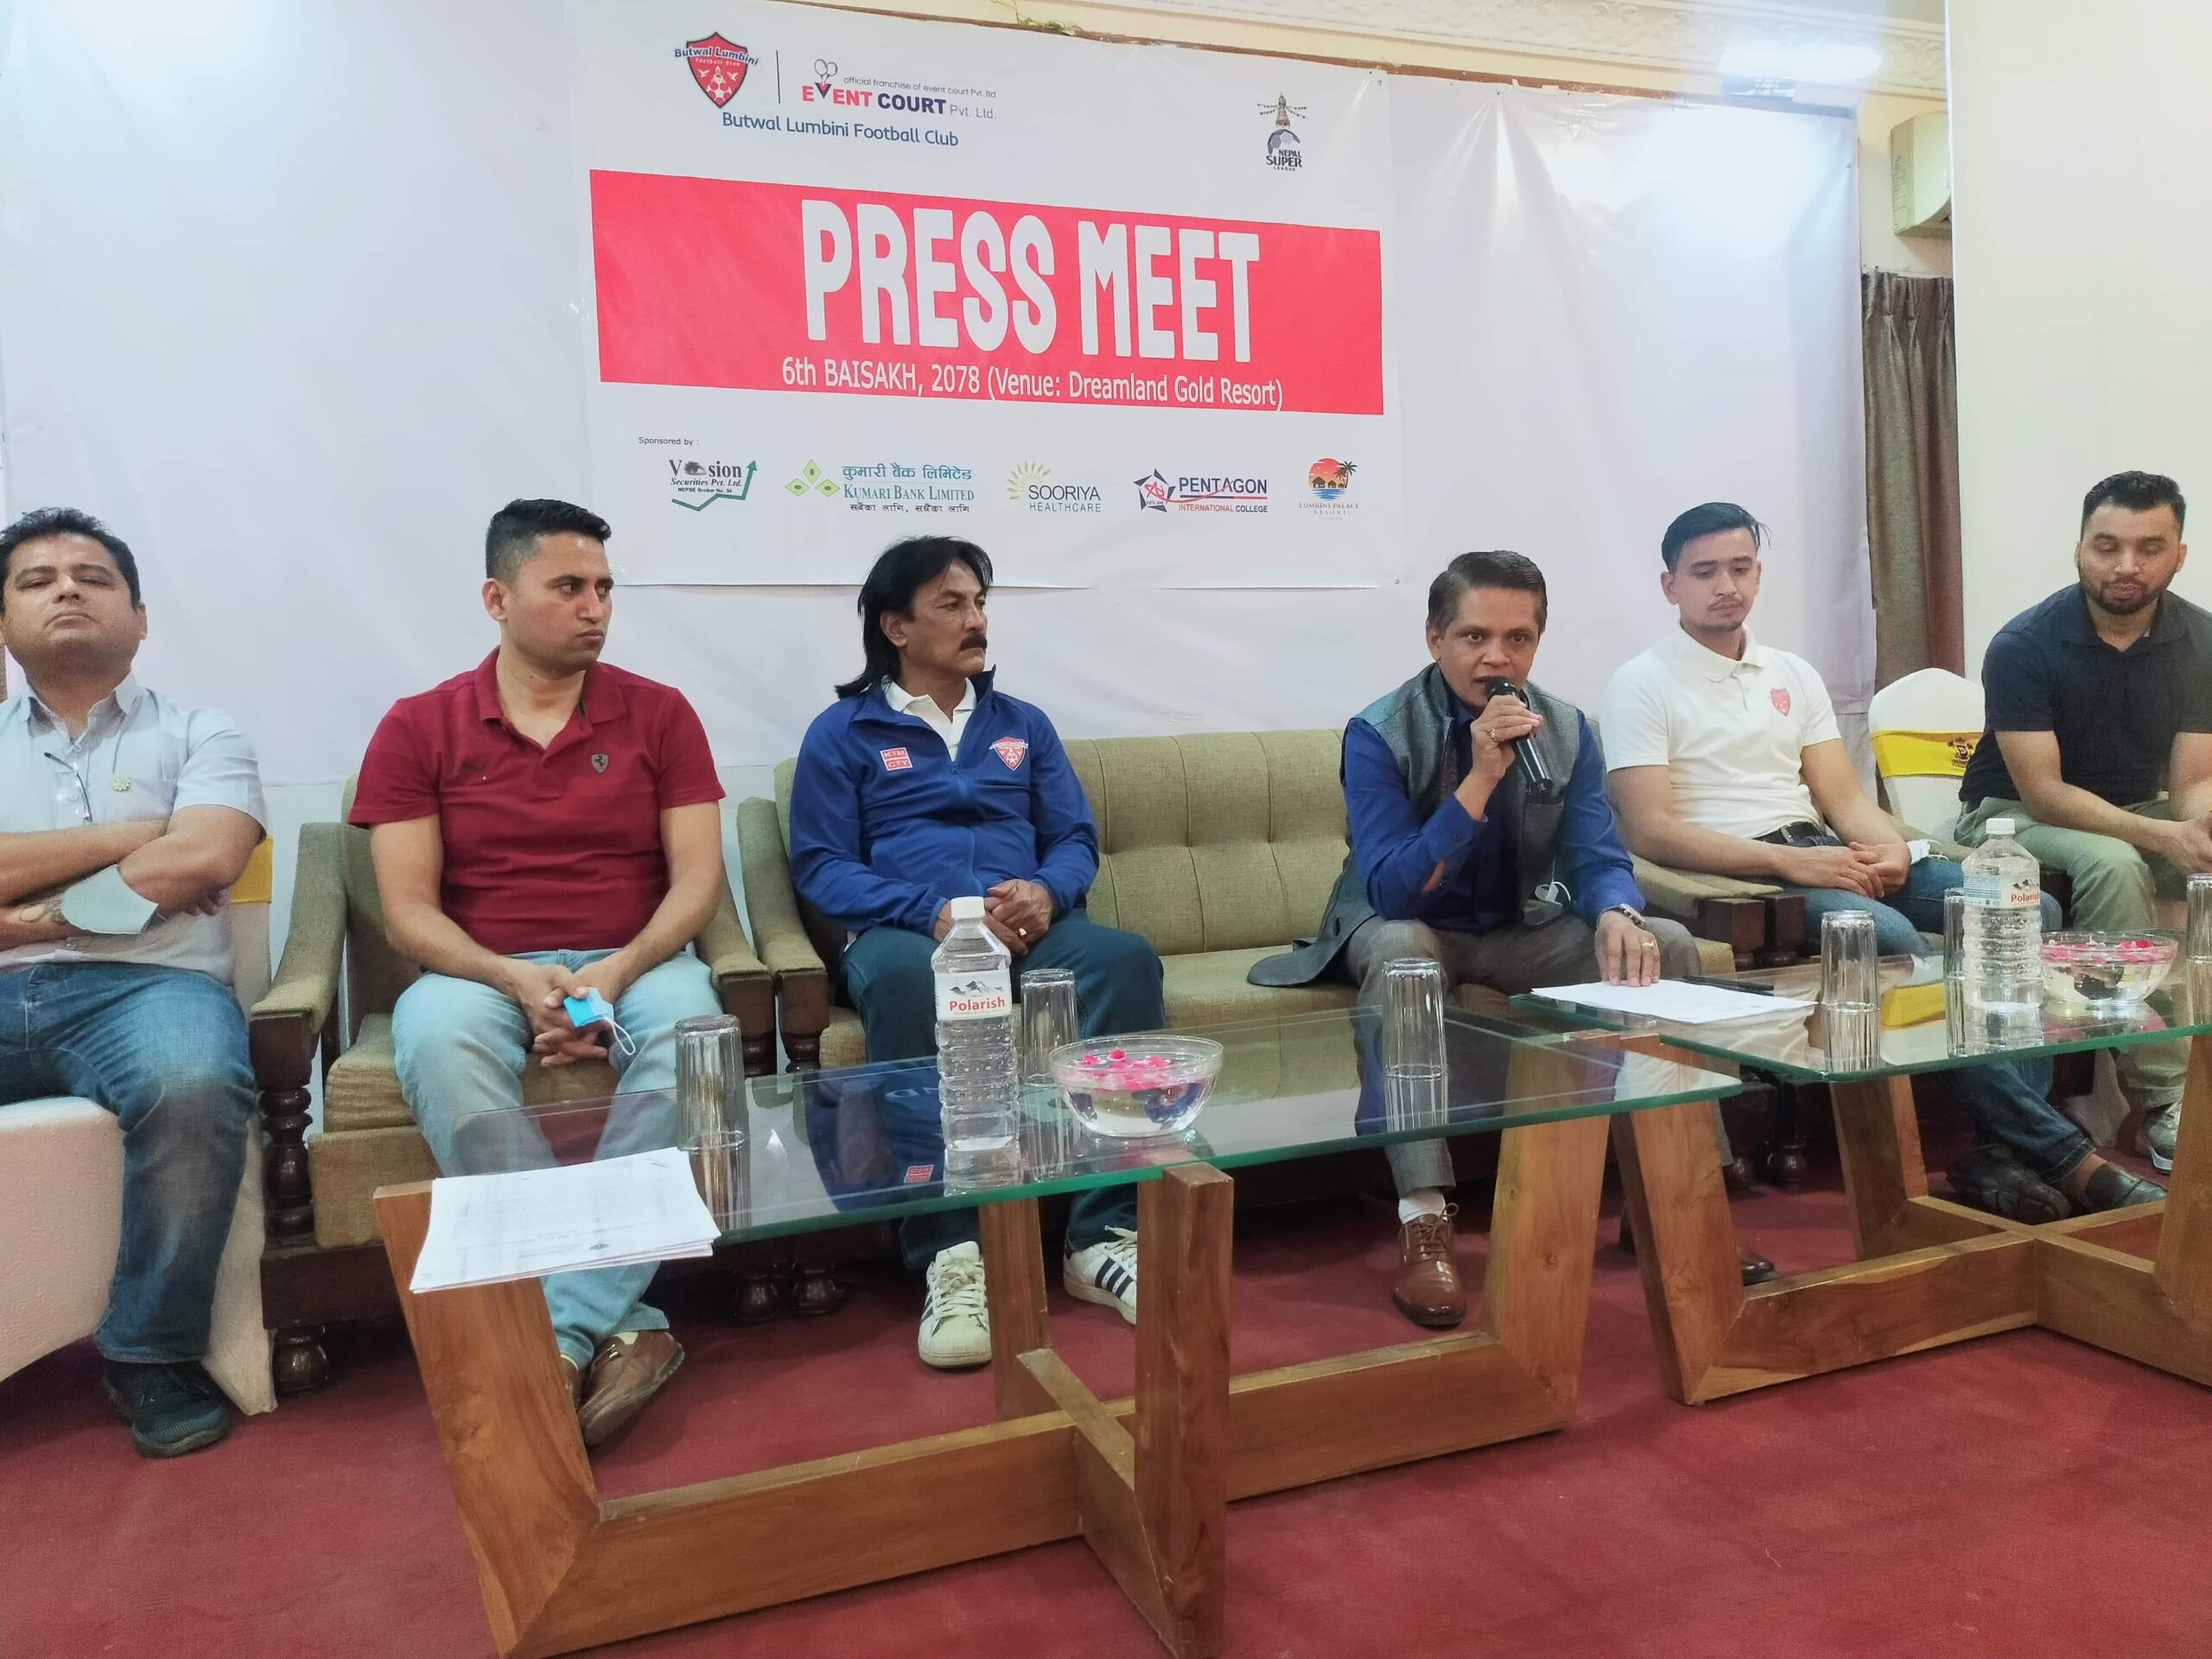 नेपाल सुपर लिगको लागि लुम्बिनी फुटबल क्लबको टिम तयार,उपाधि जित्ने दाबी